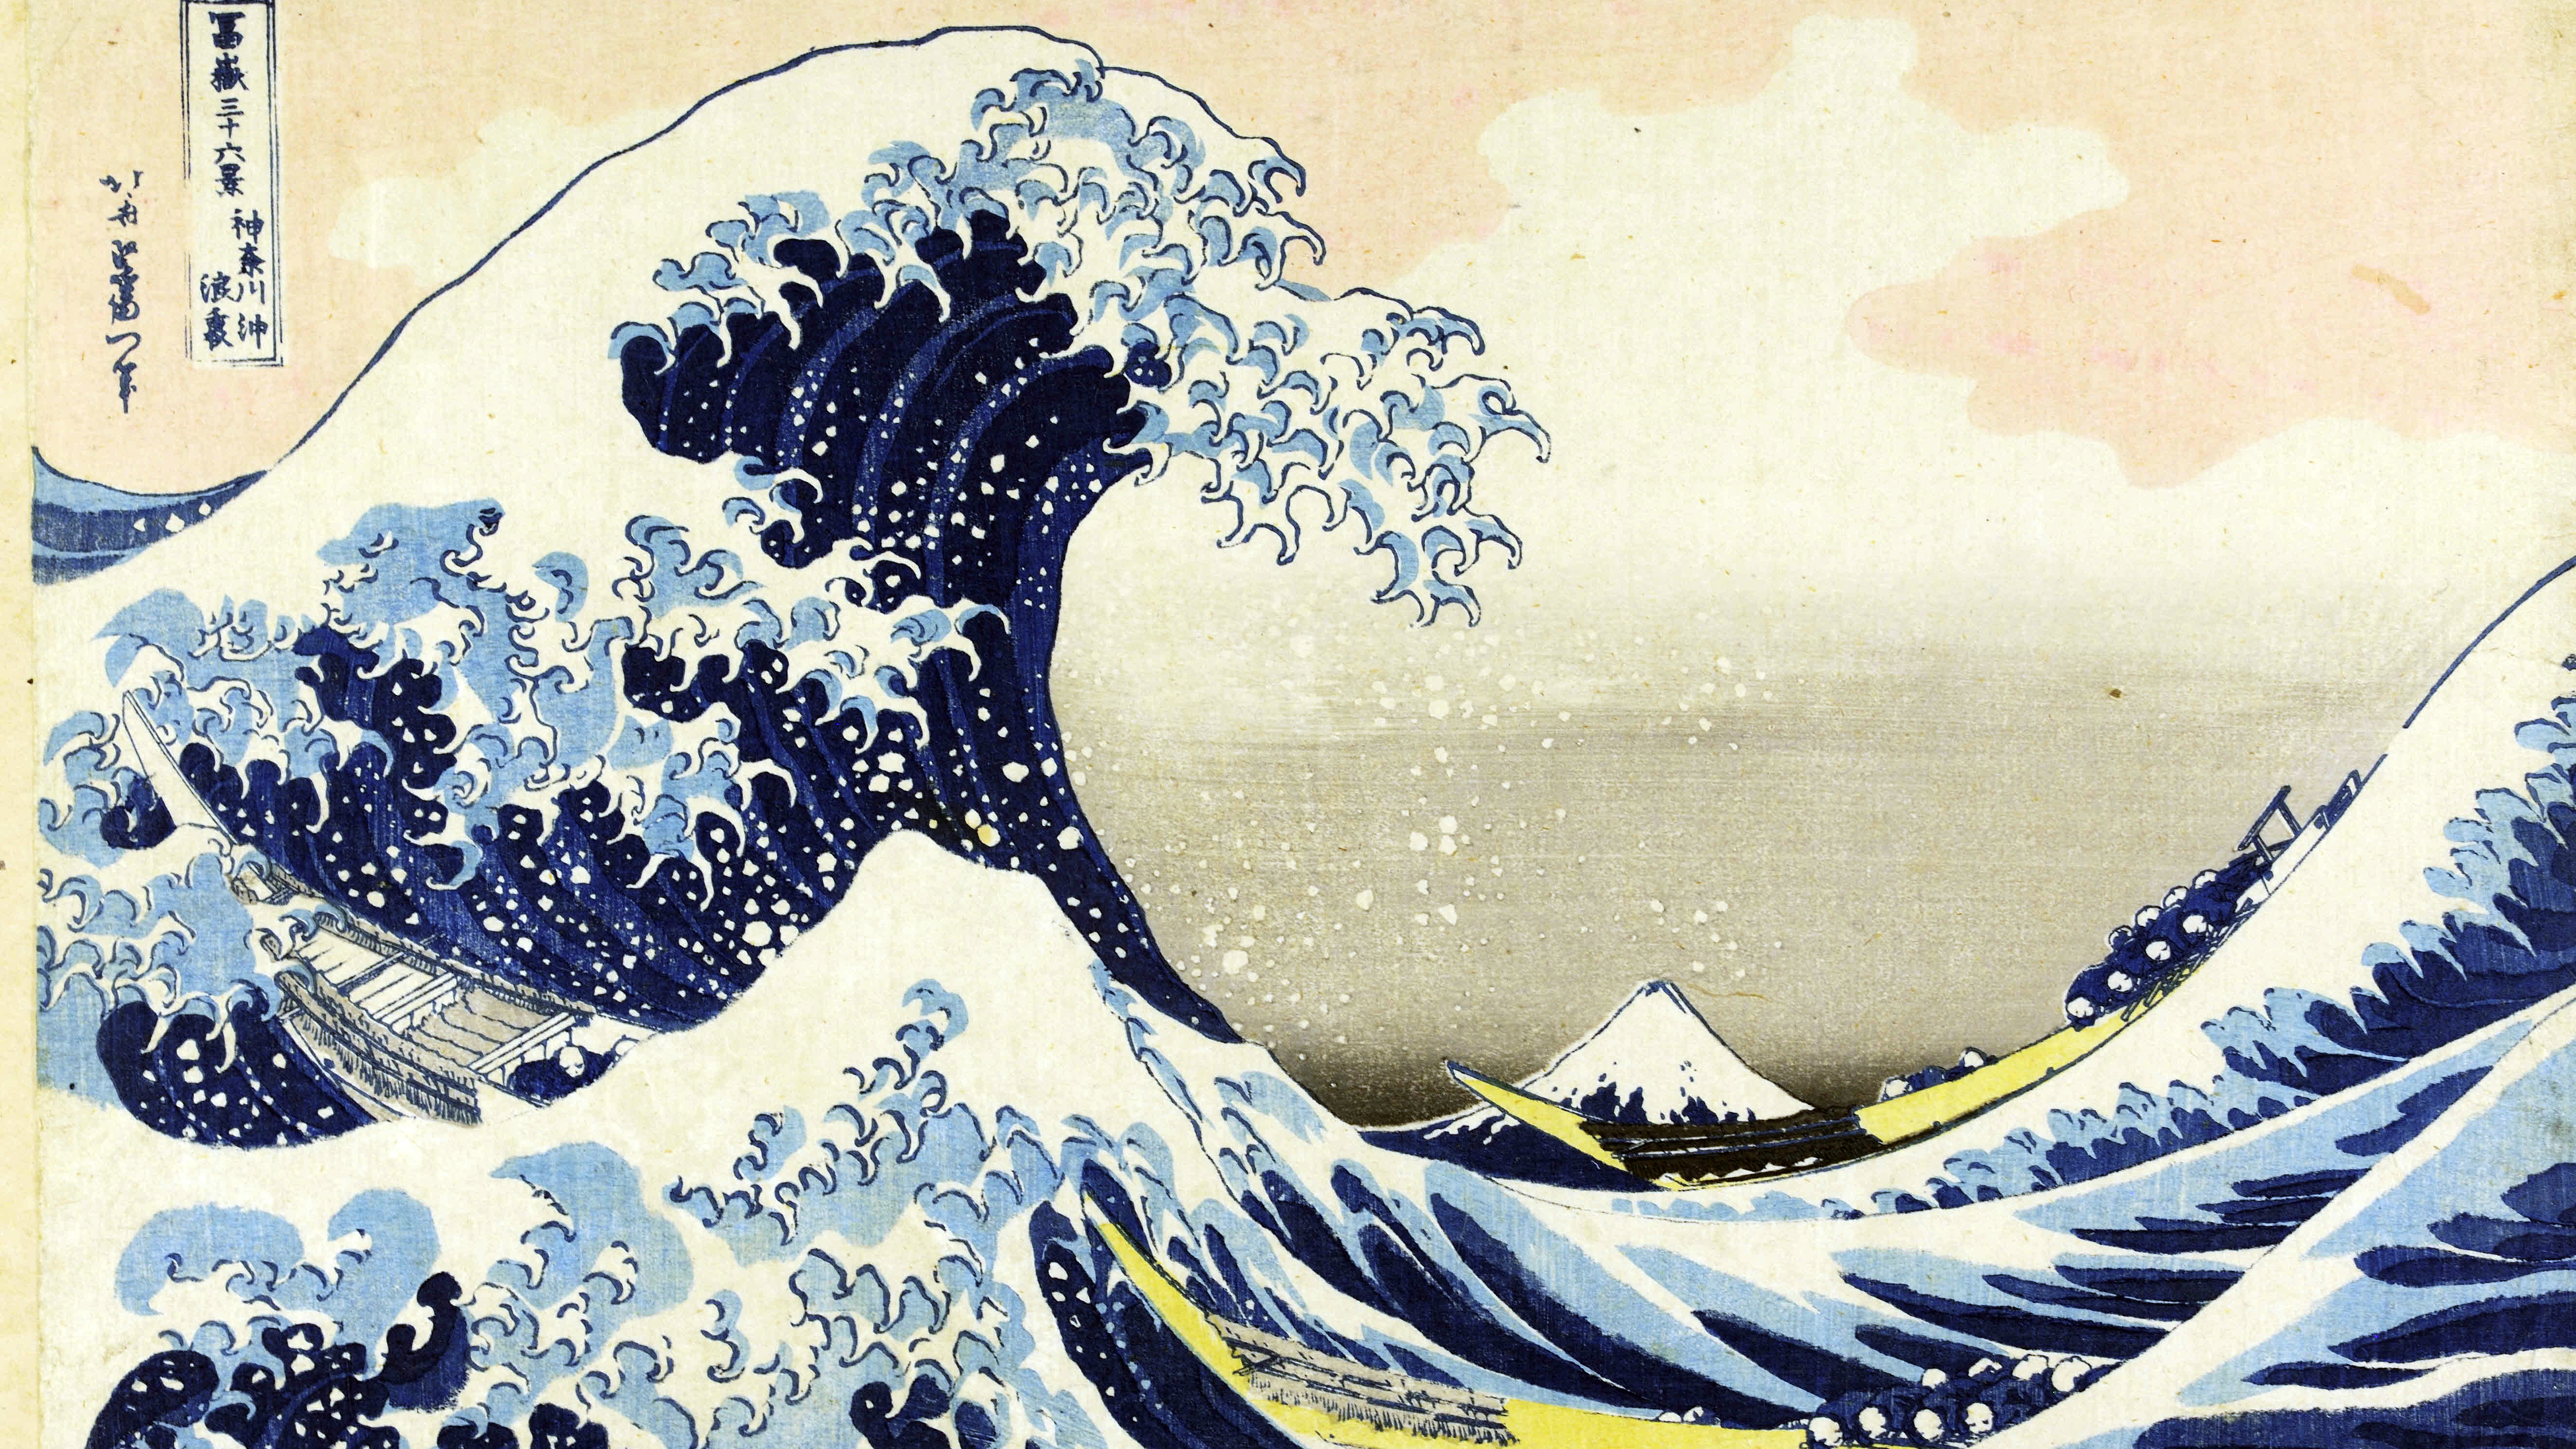 Hokusai “The Great Wave”